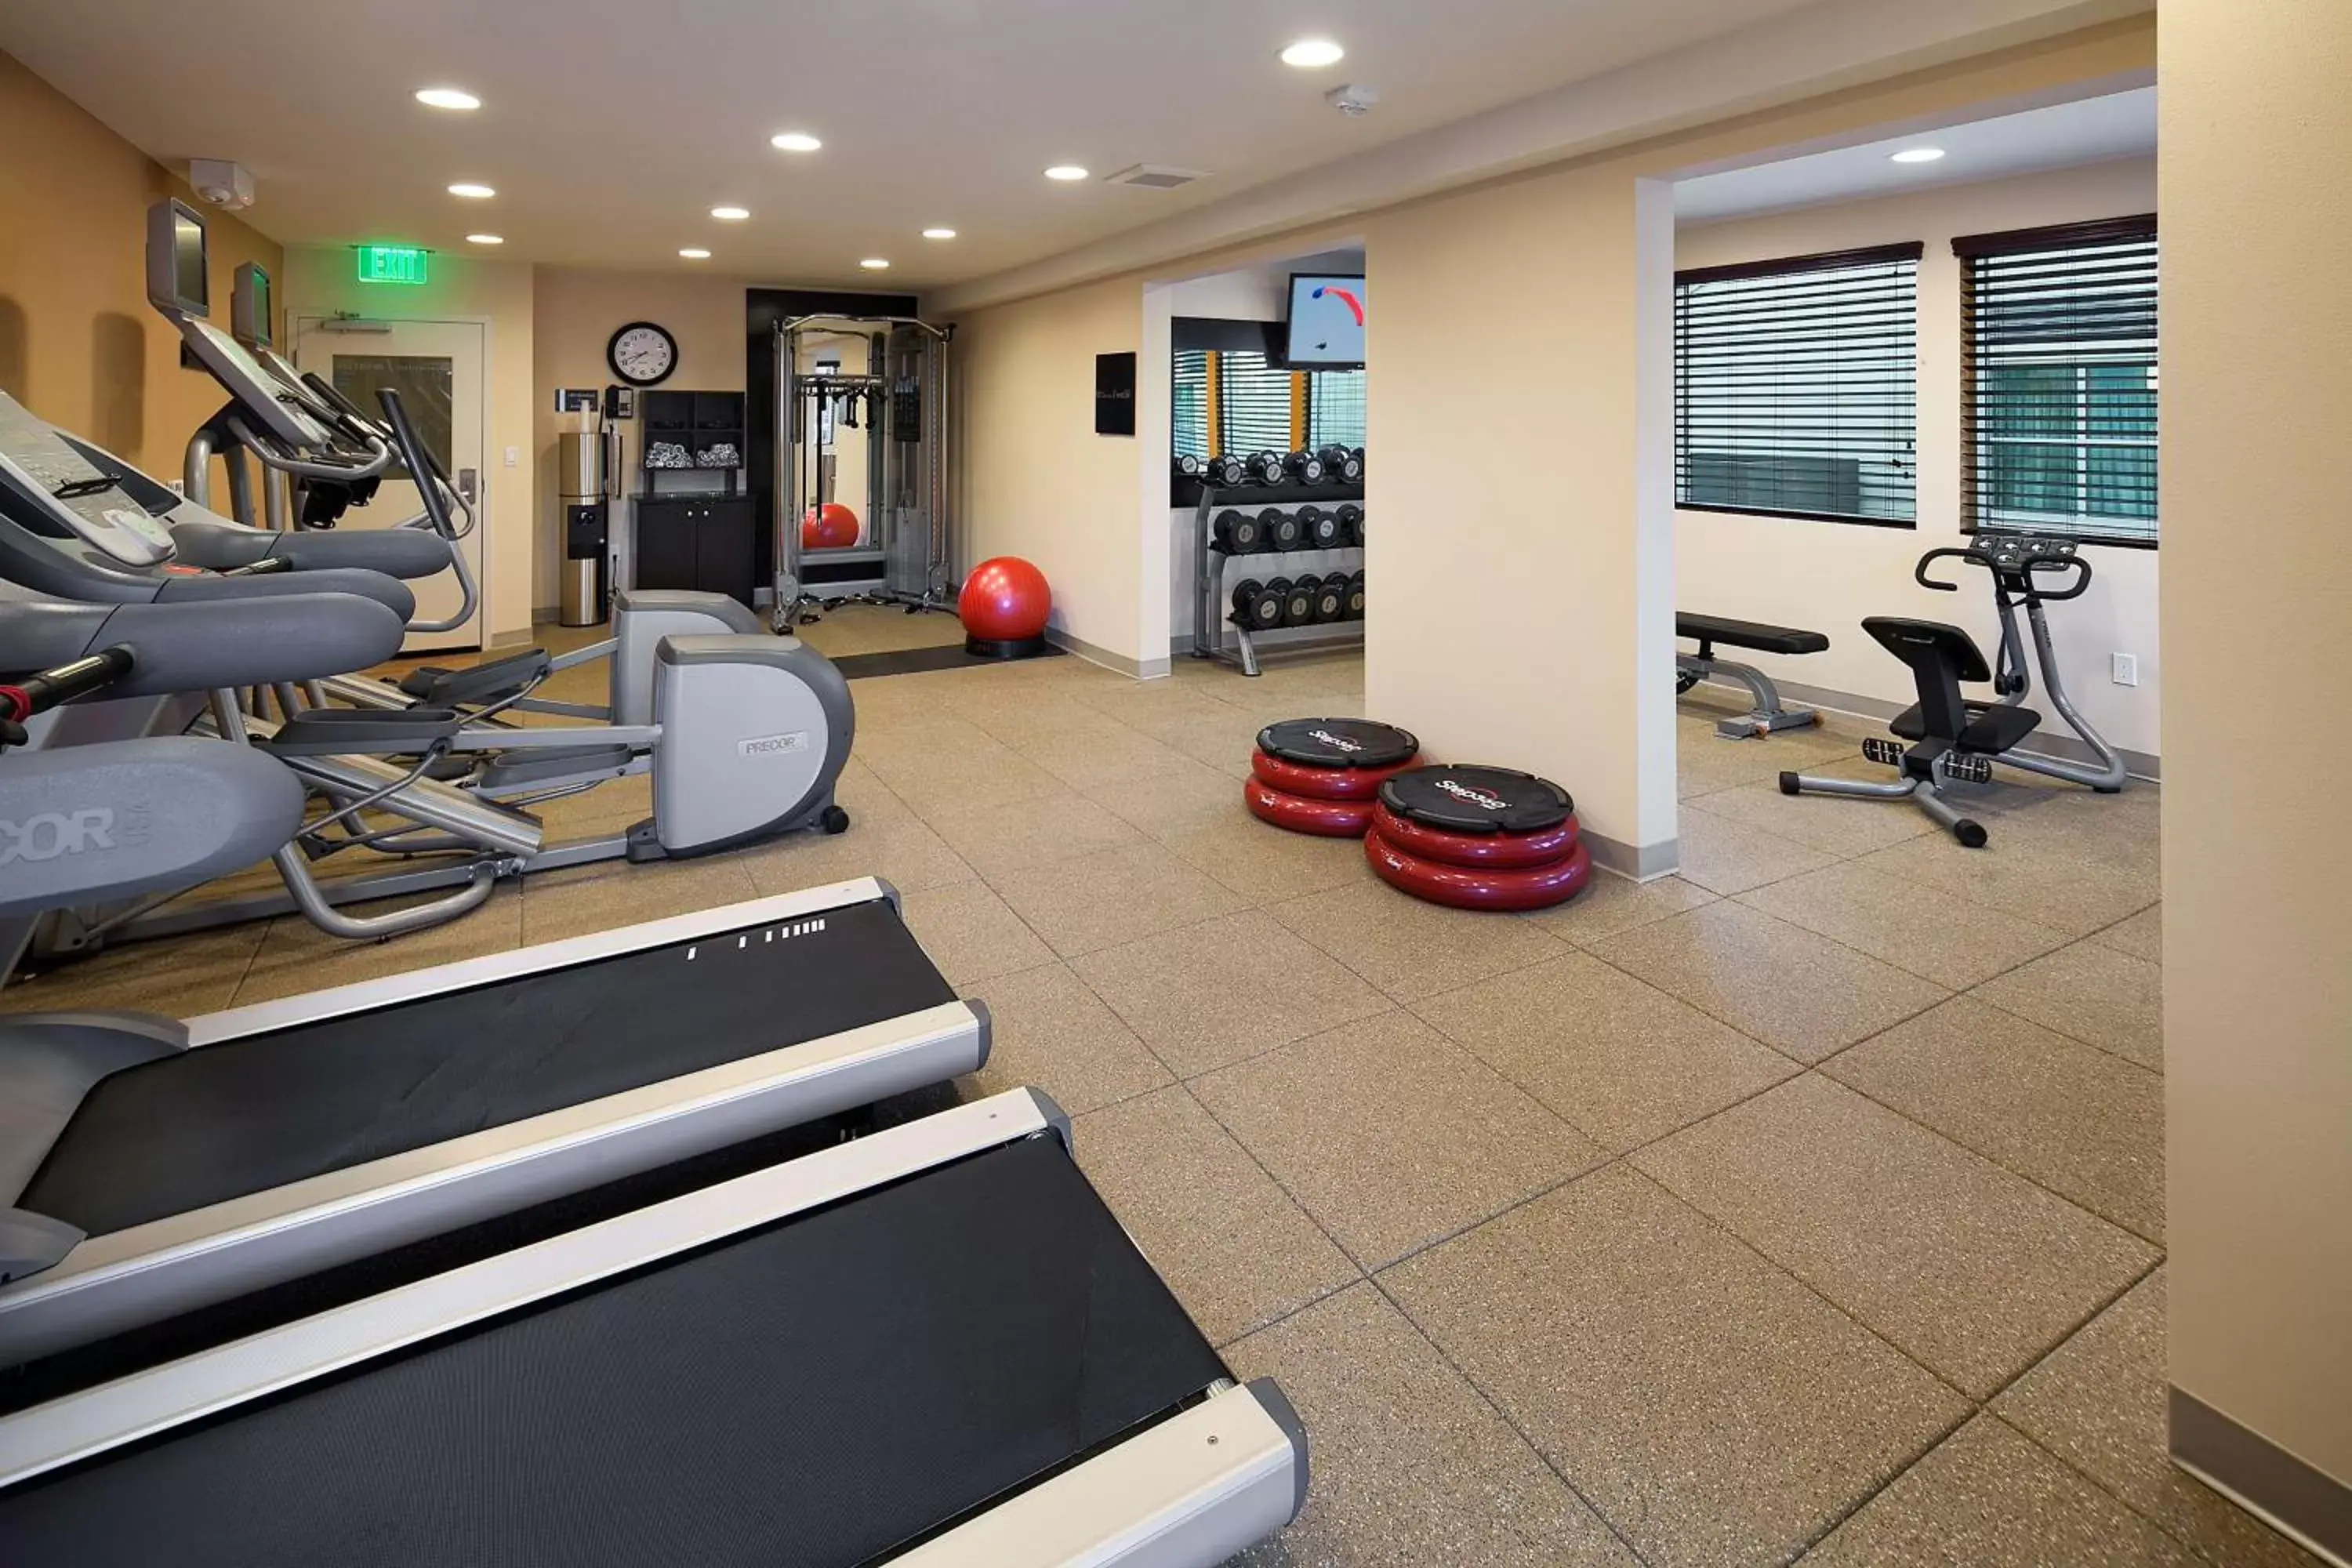 Fitness centre/facilities, Fitness Center/Facilities in Hilton Garden Inn Los Angeles Marina Del Rey